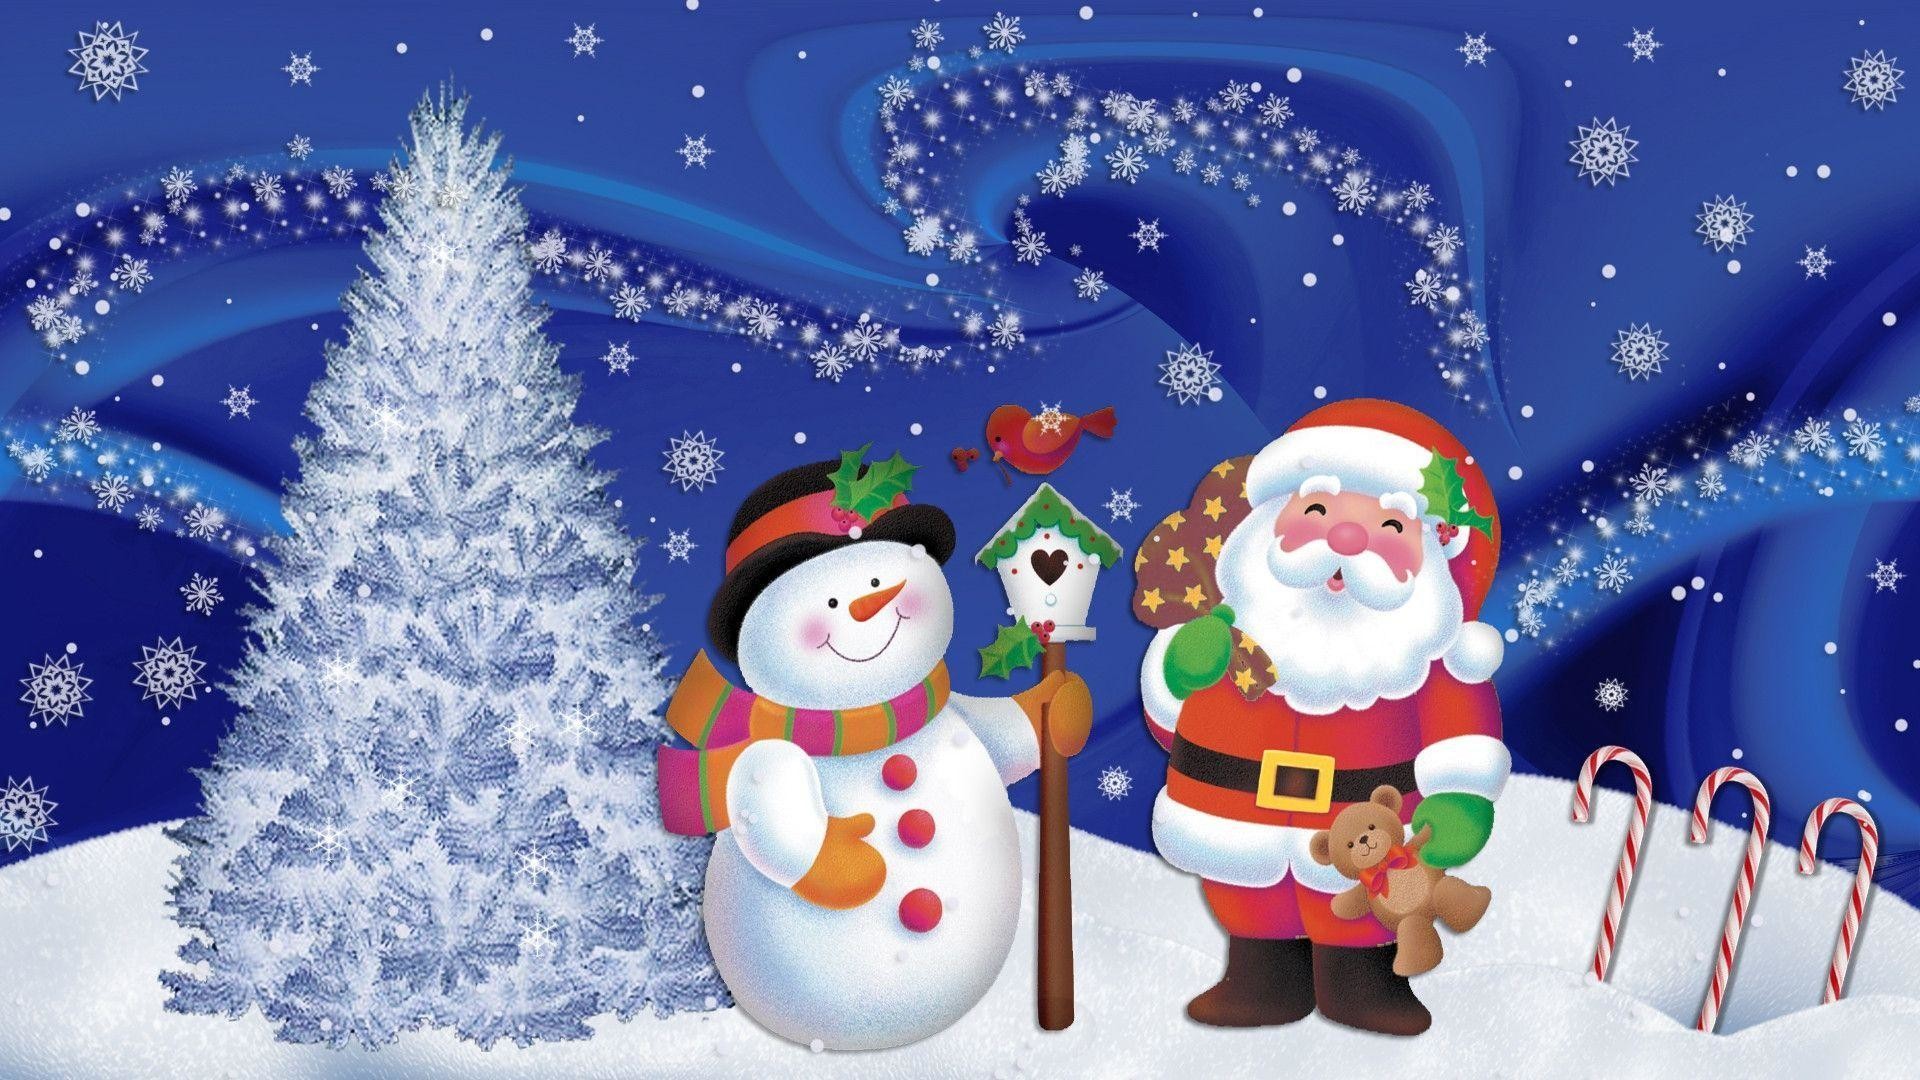 1920x1080 Animated Christmas Desktop wallpapers | Animated Christmas .